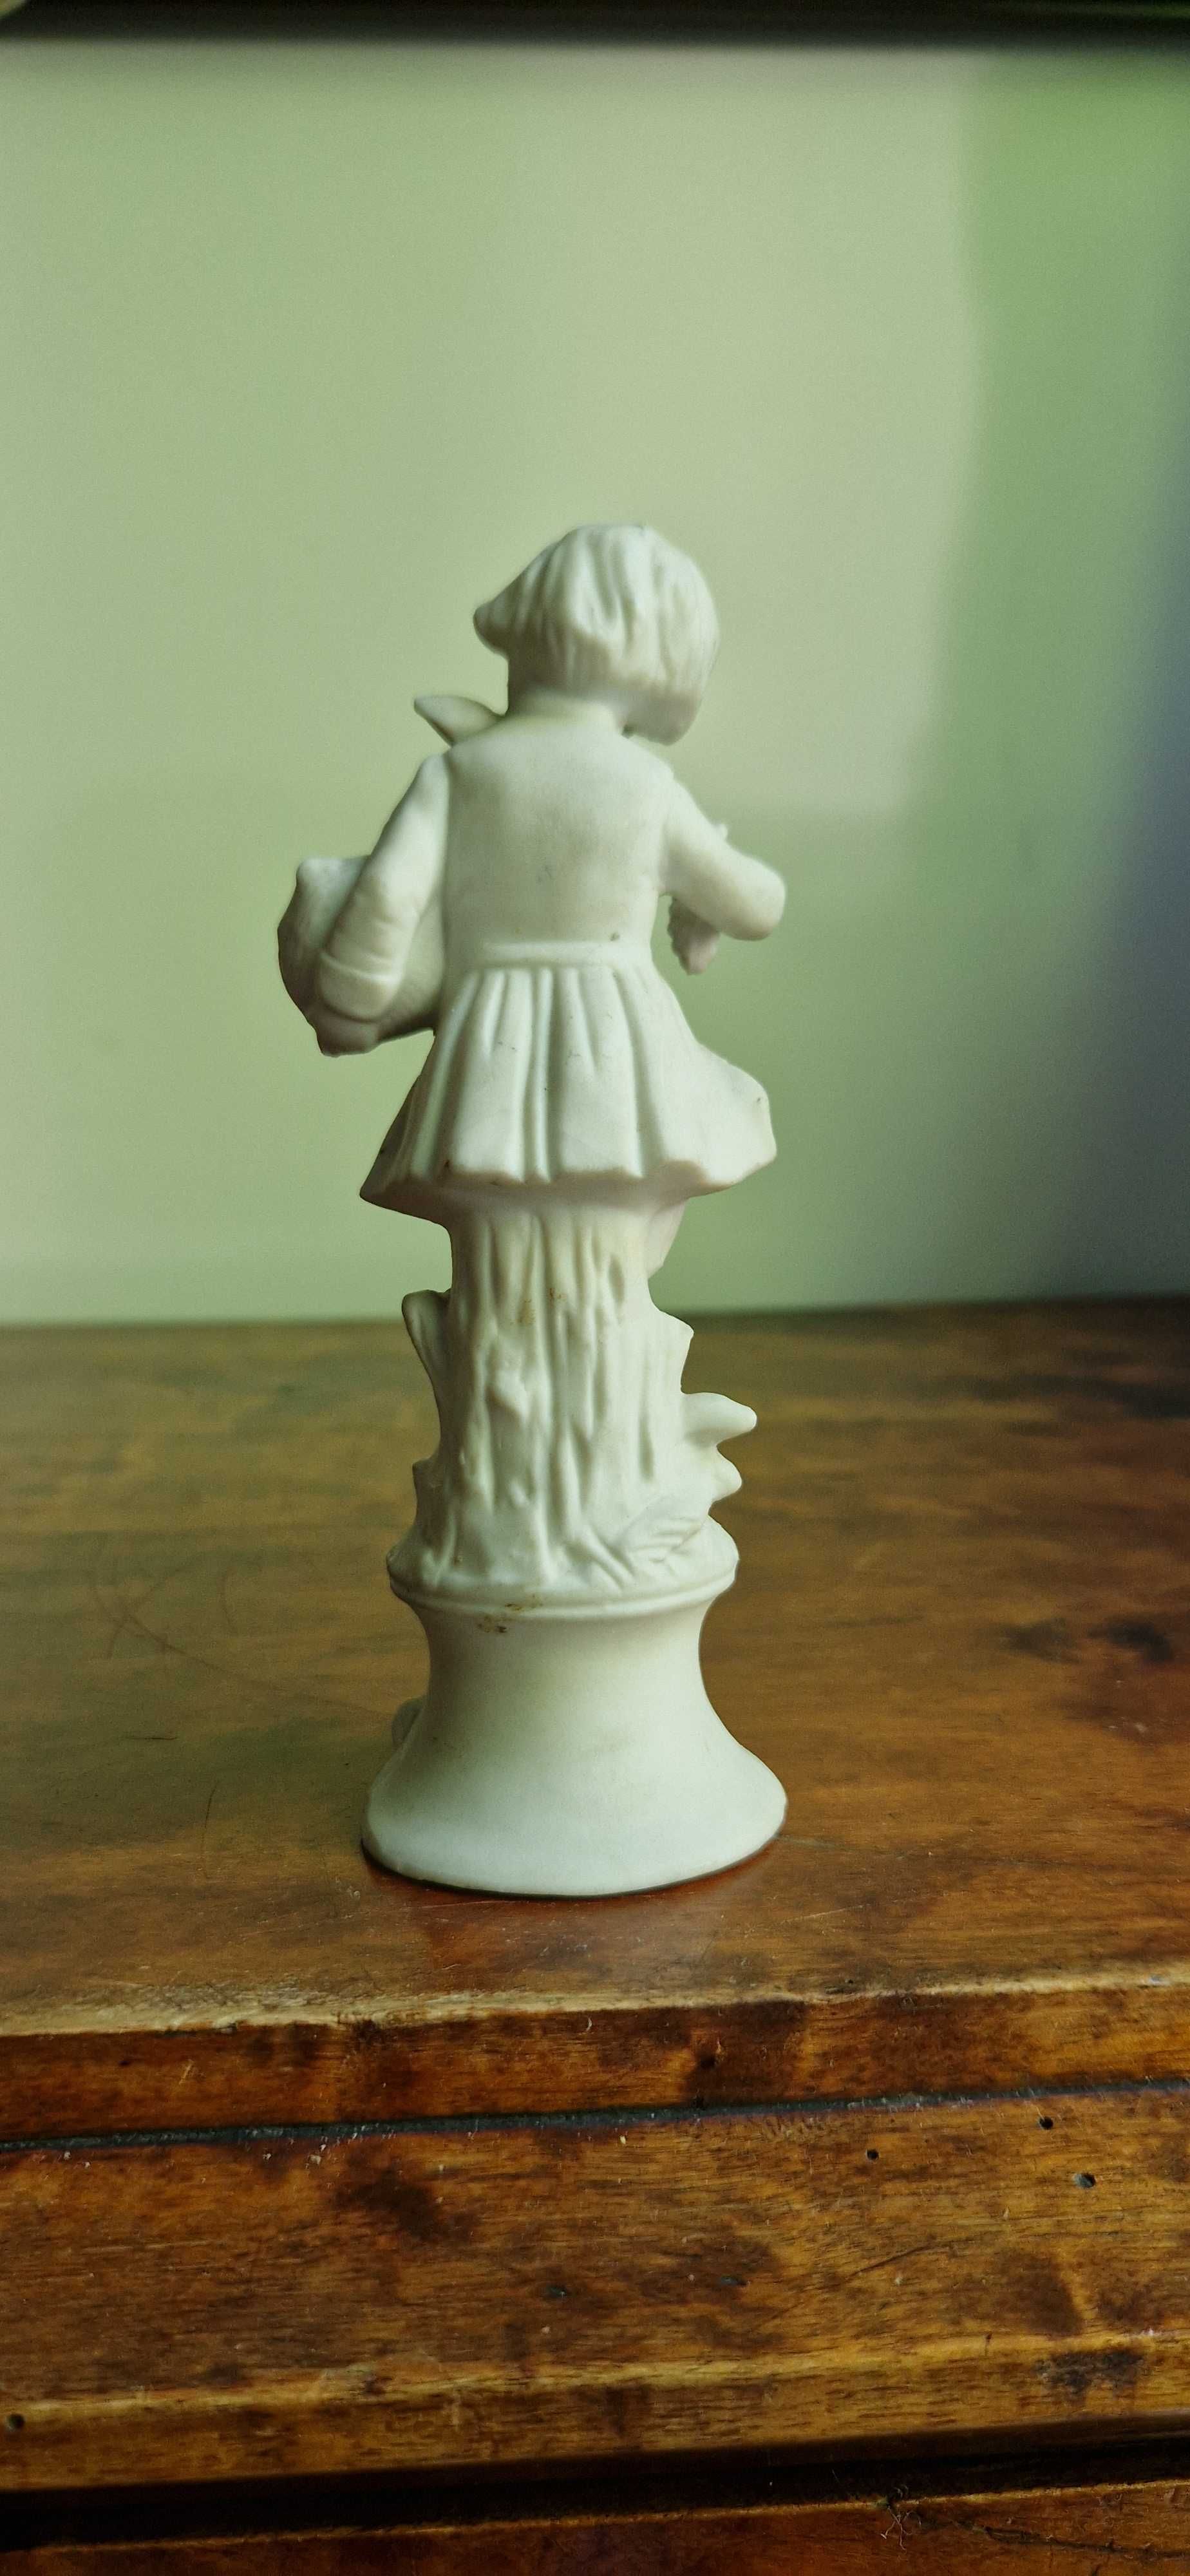 Figurka porcelana biskwit sygnowana Chlopiec z winem antyk secesja